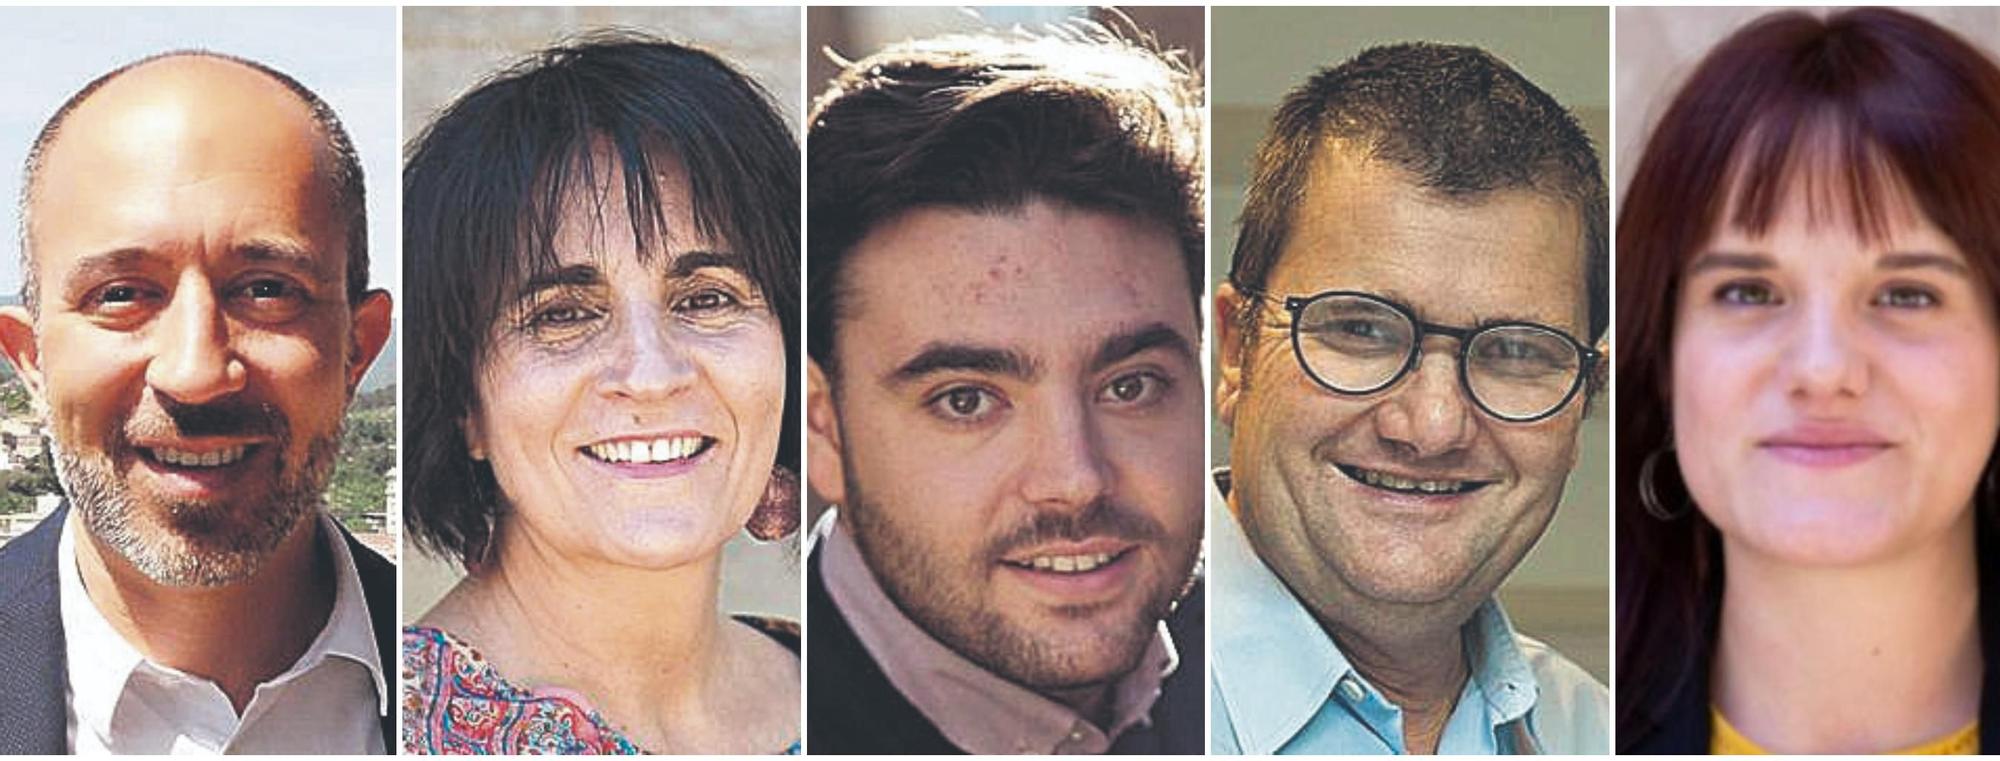 D&#039;esquerra a dreta: Marc Aloy, alcalde de Manresa, Rosa Ortega, regidora de Manresa, Oriol Ribalta, alcalde de Sallent , Antoni Massegú, regidor de manresa  i Alba Camps, diputada d’ERC al Parlament